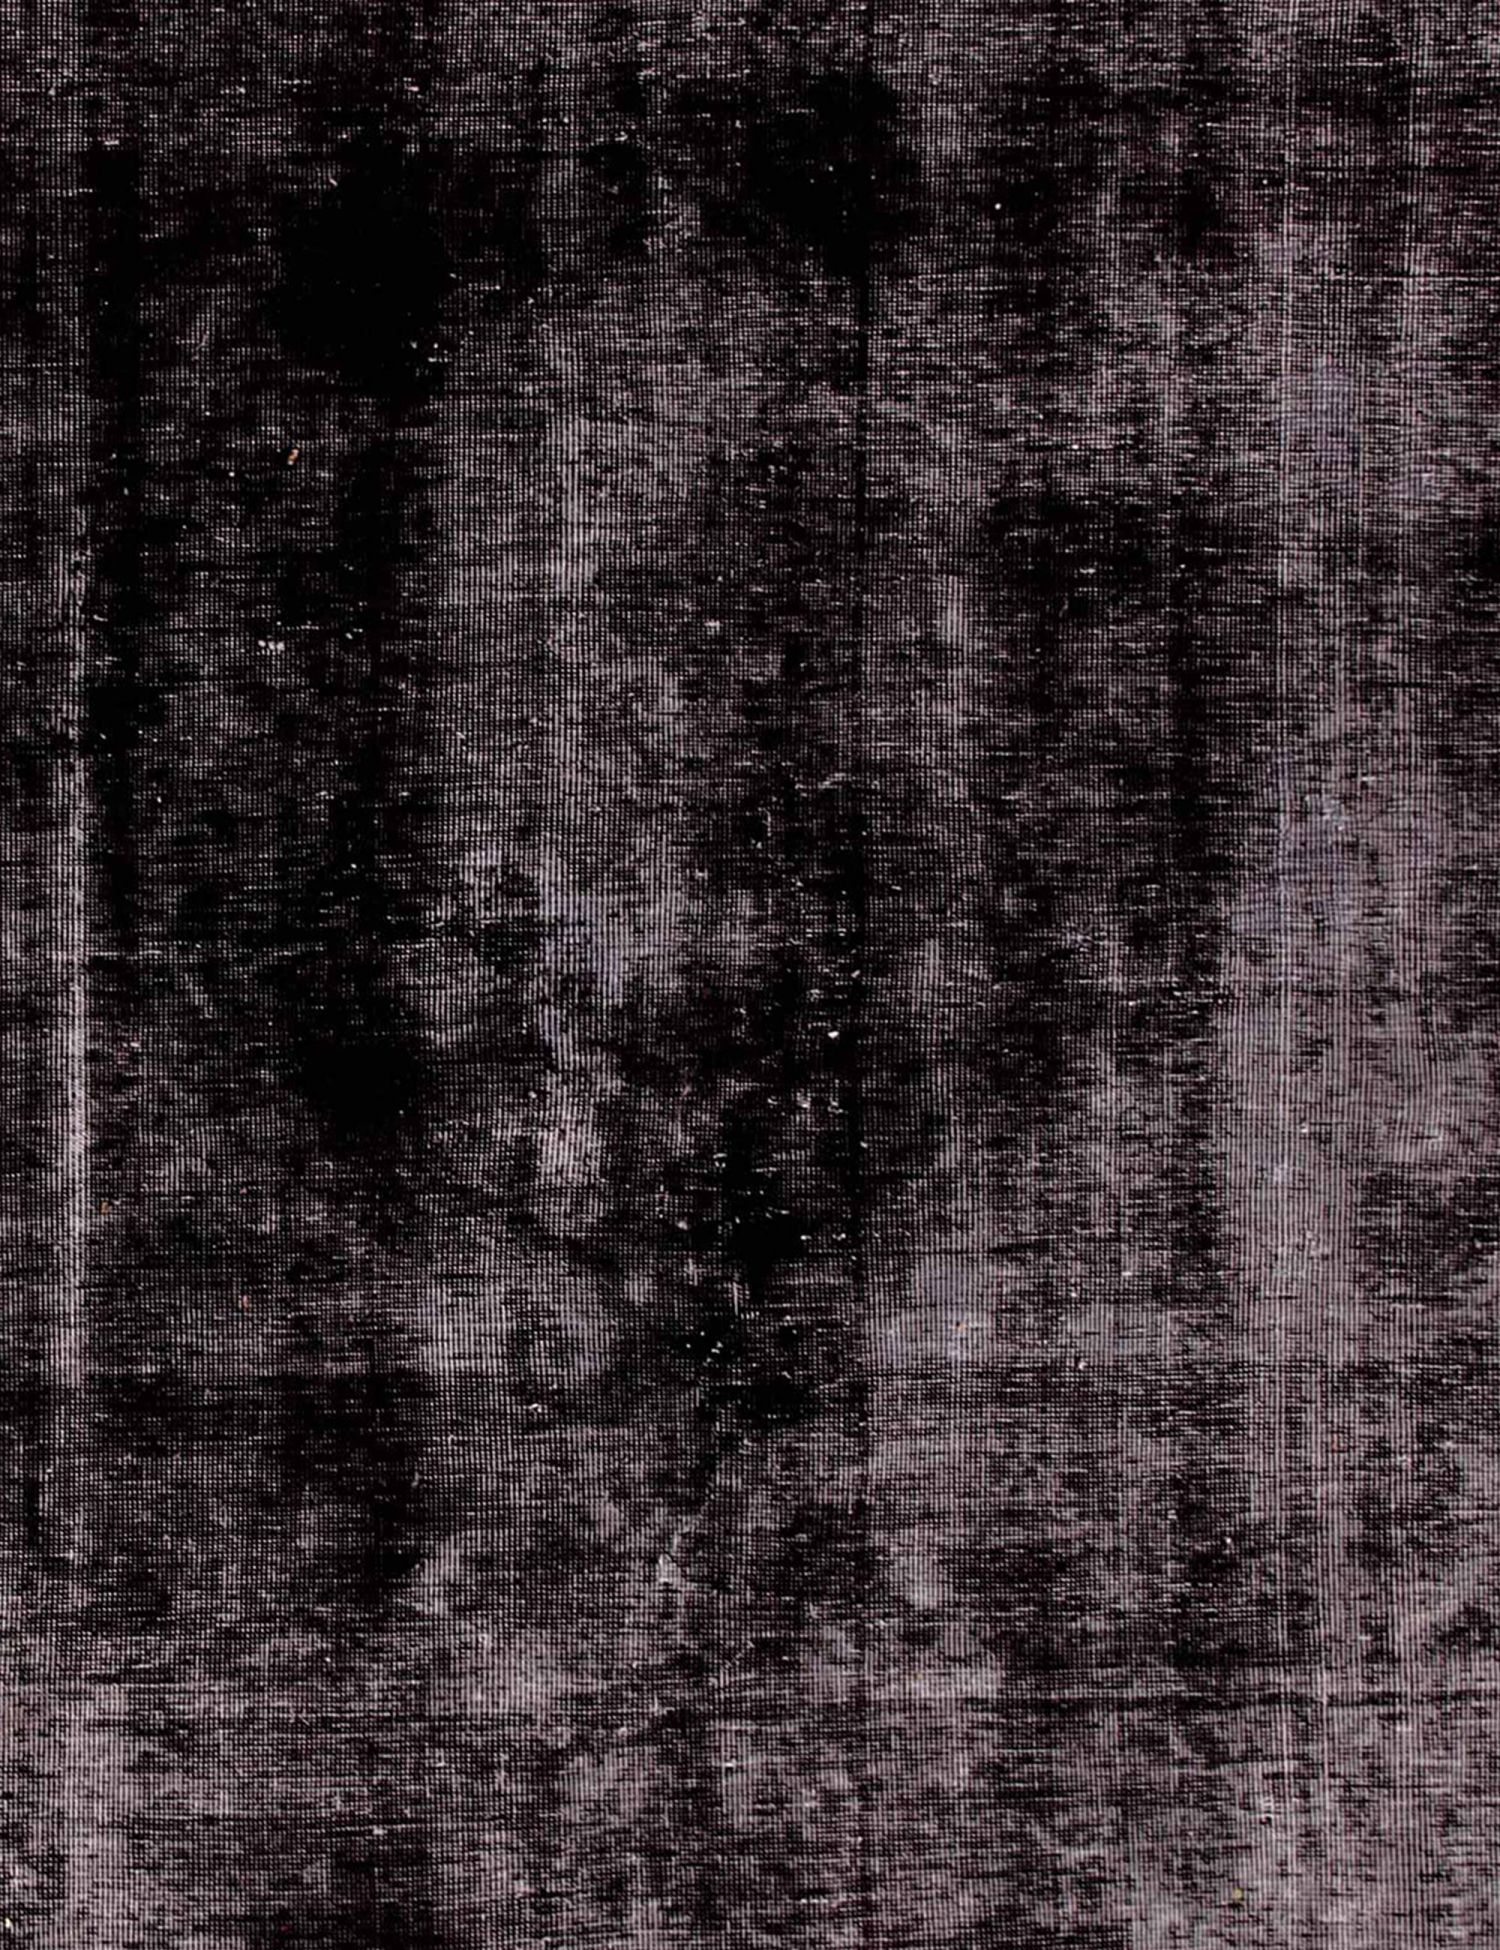 Persian Vintage Carpet  black <br/>220 x 180 cm